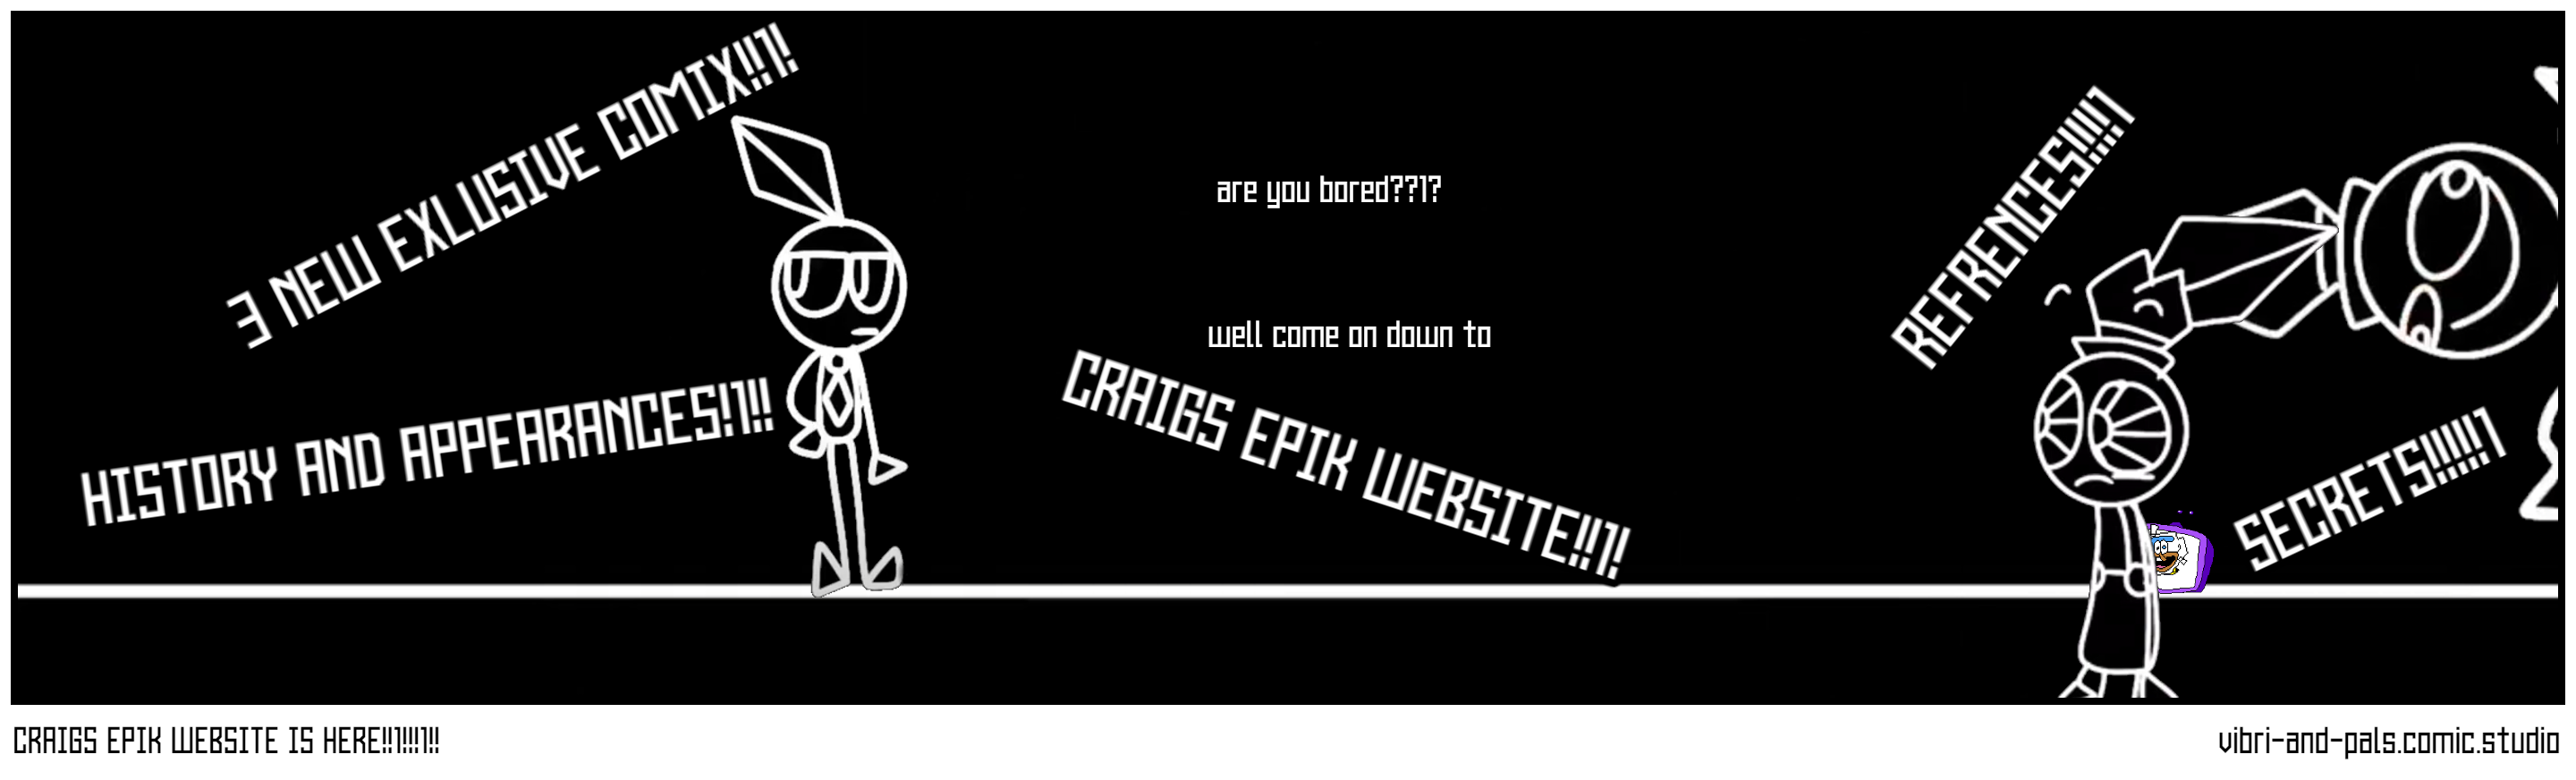 CRAIGS EPIK WEBSITE IS HERE!!1!!!1!!